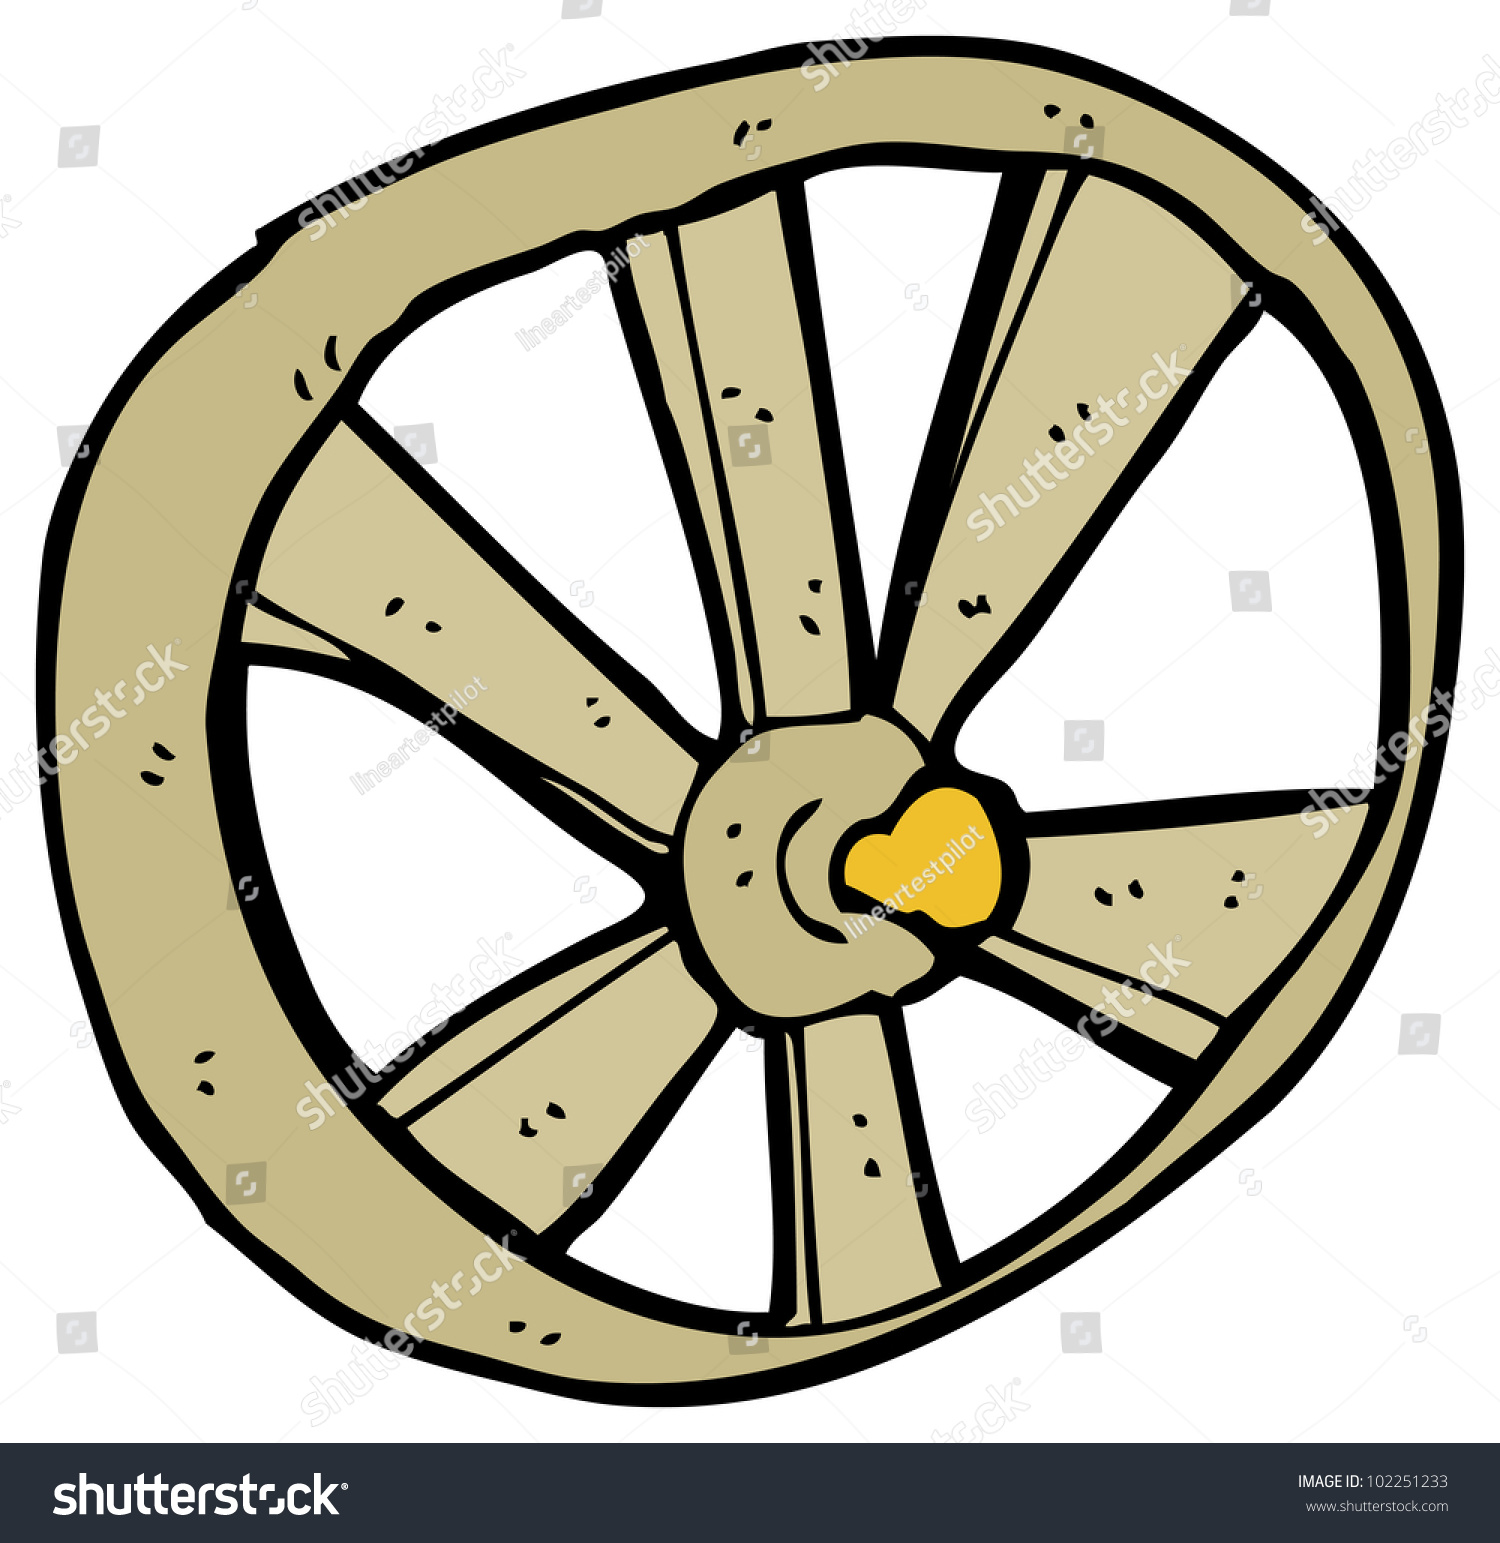 Cartoon Wagon Wheel Stock Illustration 102251233 - Shutterstock